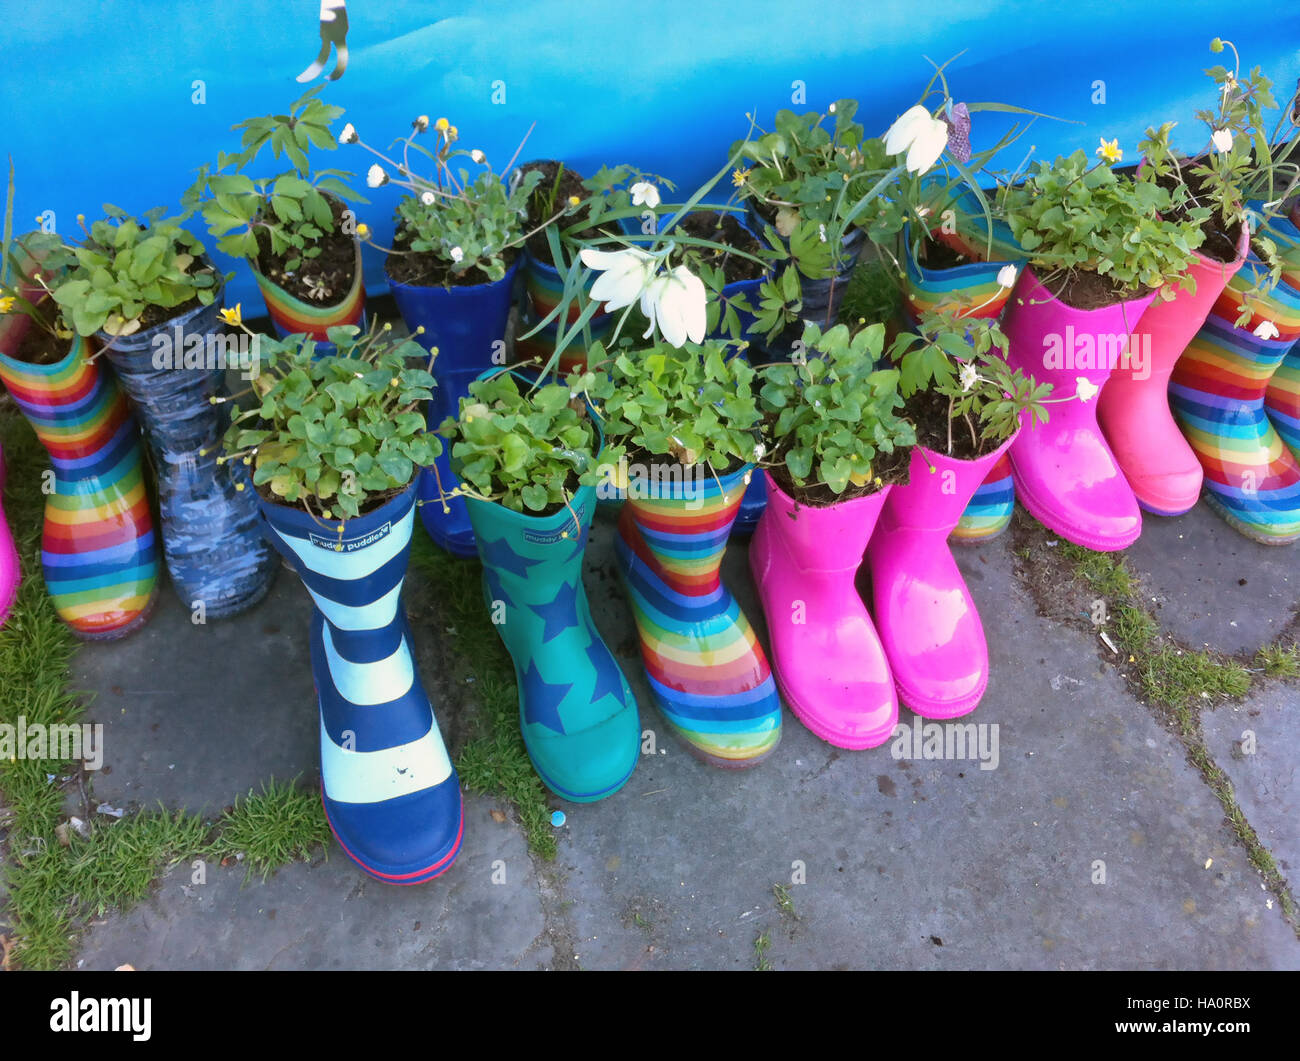 Jardines de arranque creada por niños en Cardiff, País de Gales, como parte de un festival de las flores Foto de stock